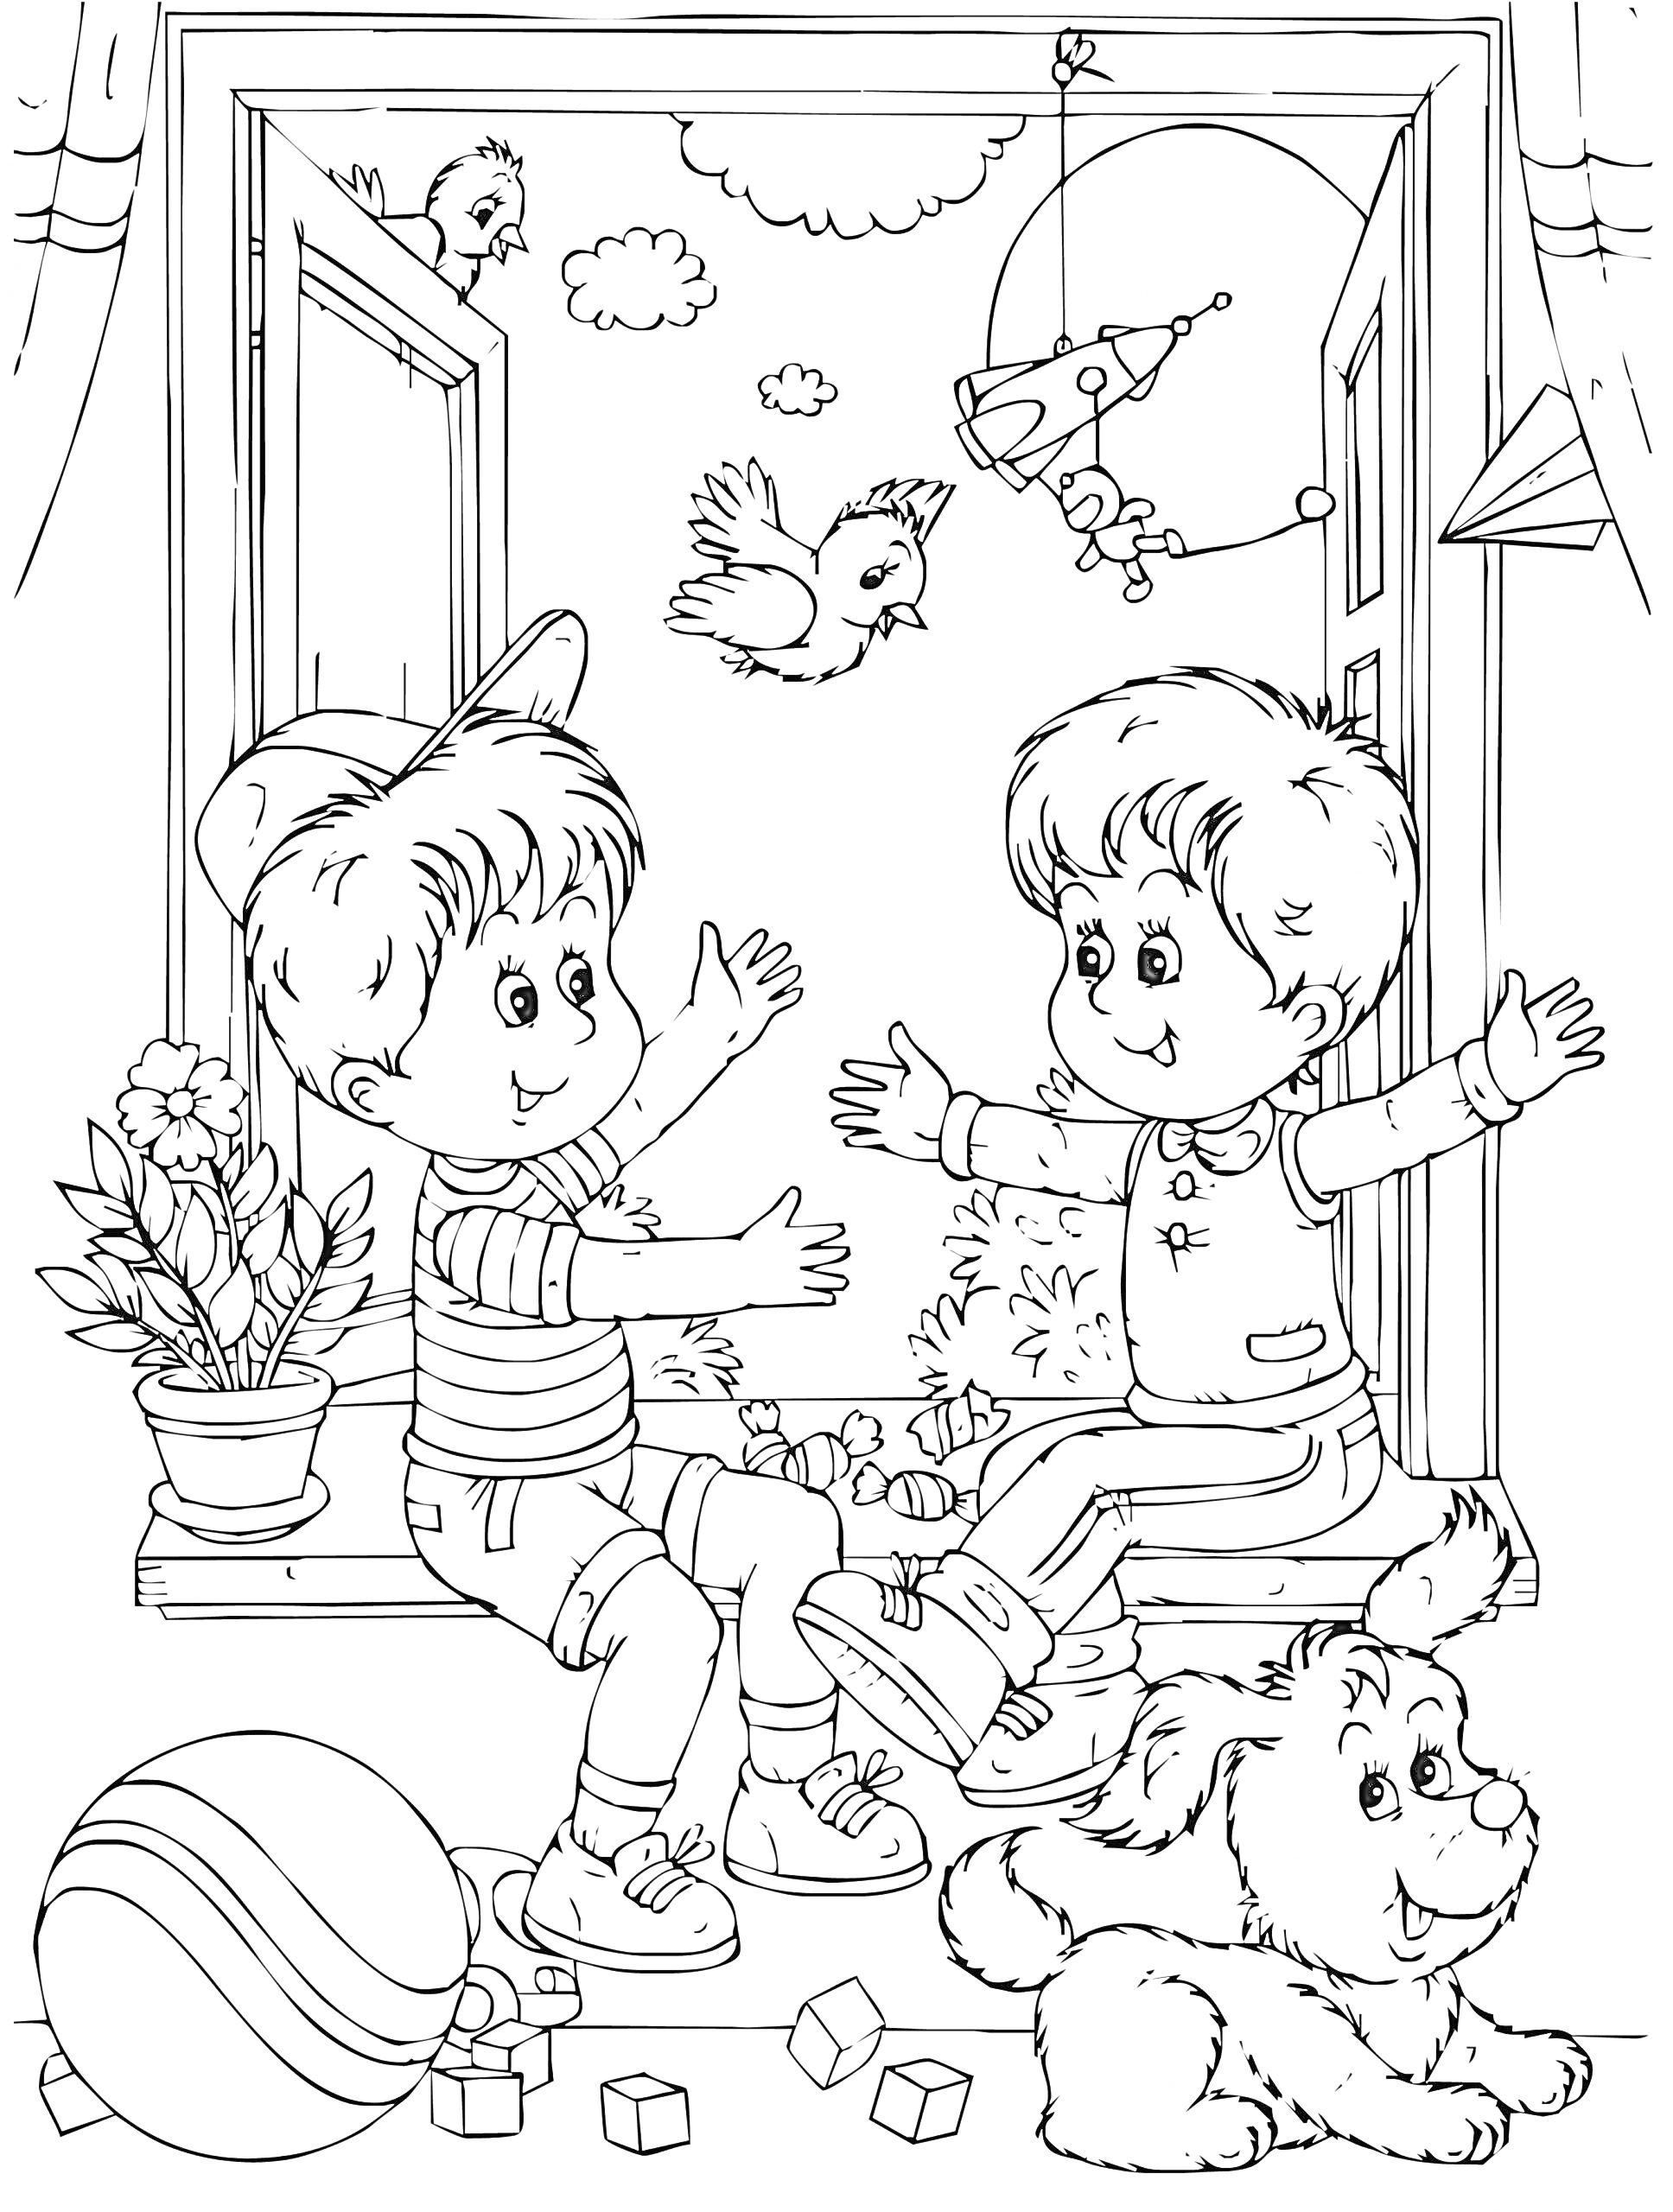 Раскраска Два мальчика сидят в комнате и веселятся, дружелюбно протягивая друг другу руки. Вокруг них находятся игрушки, щенок, мяч, кубики, цветок в горшке, окно через которое видно птицу, облака и летательный аппарат.